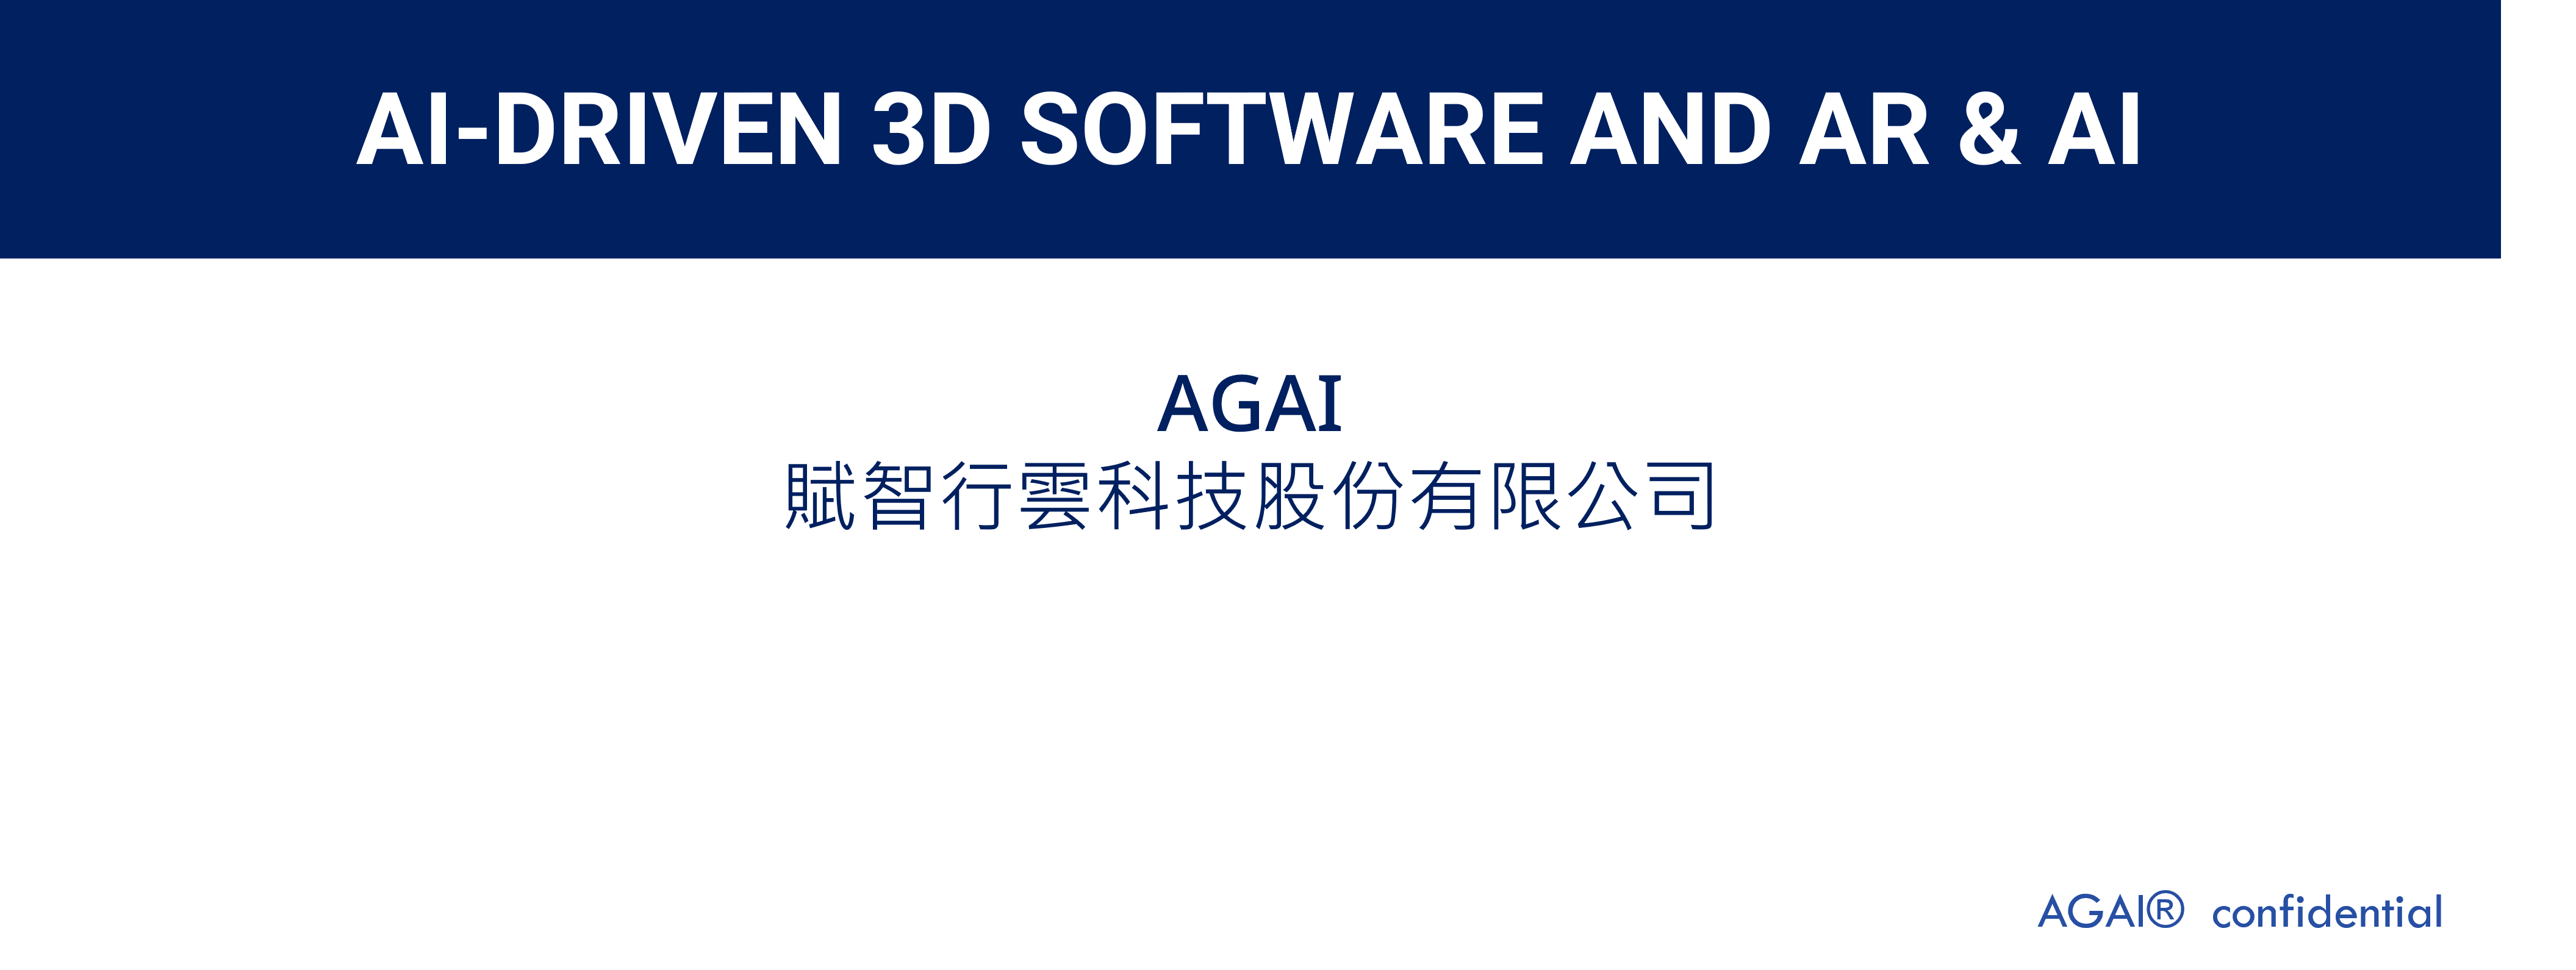 創新未來AGI 1 png